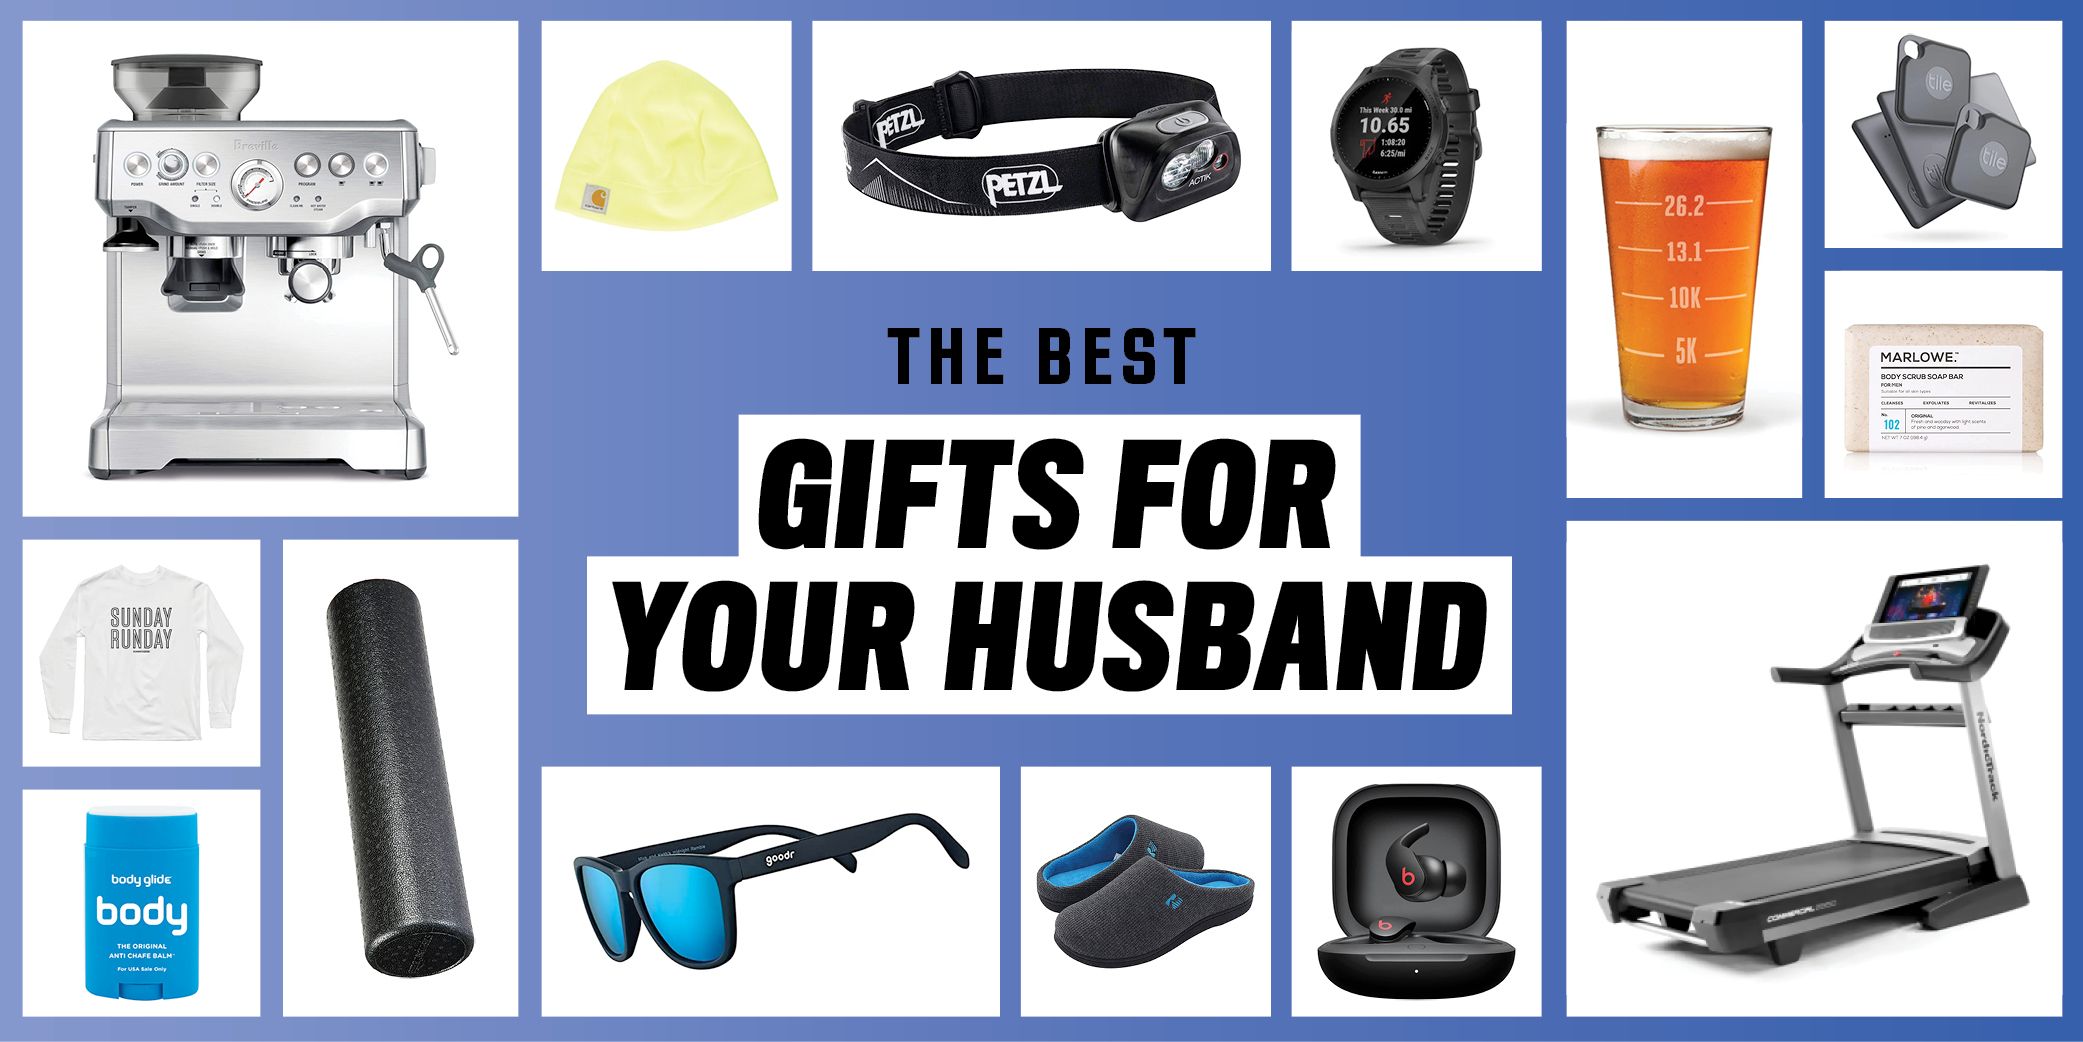 https://hips.hearstapps.com/hmg-prod/images/run-best-gifts-for-husband-1674767183.jpg